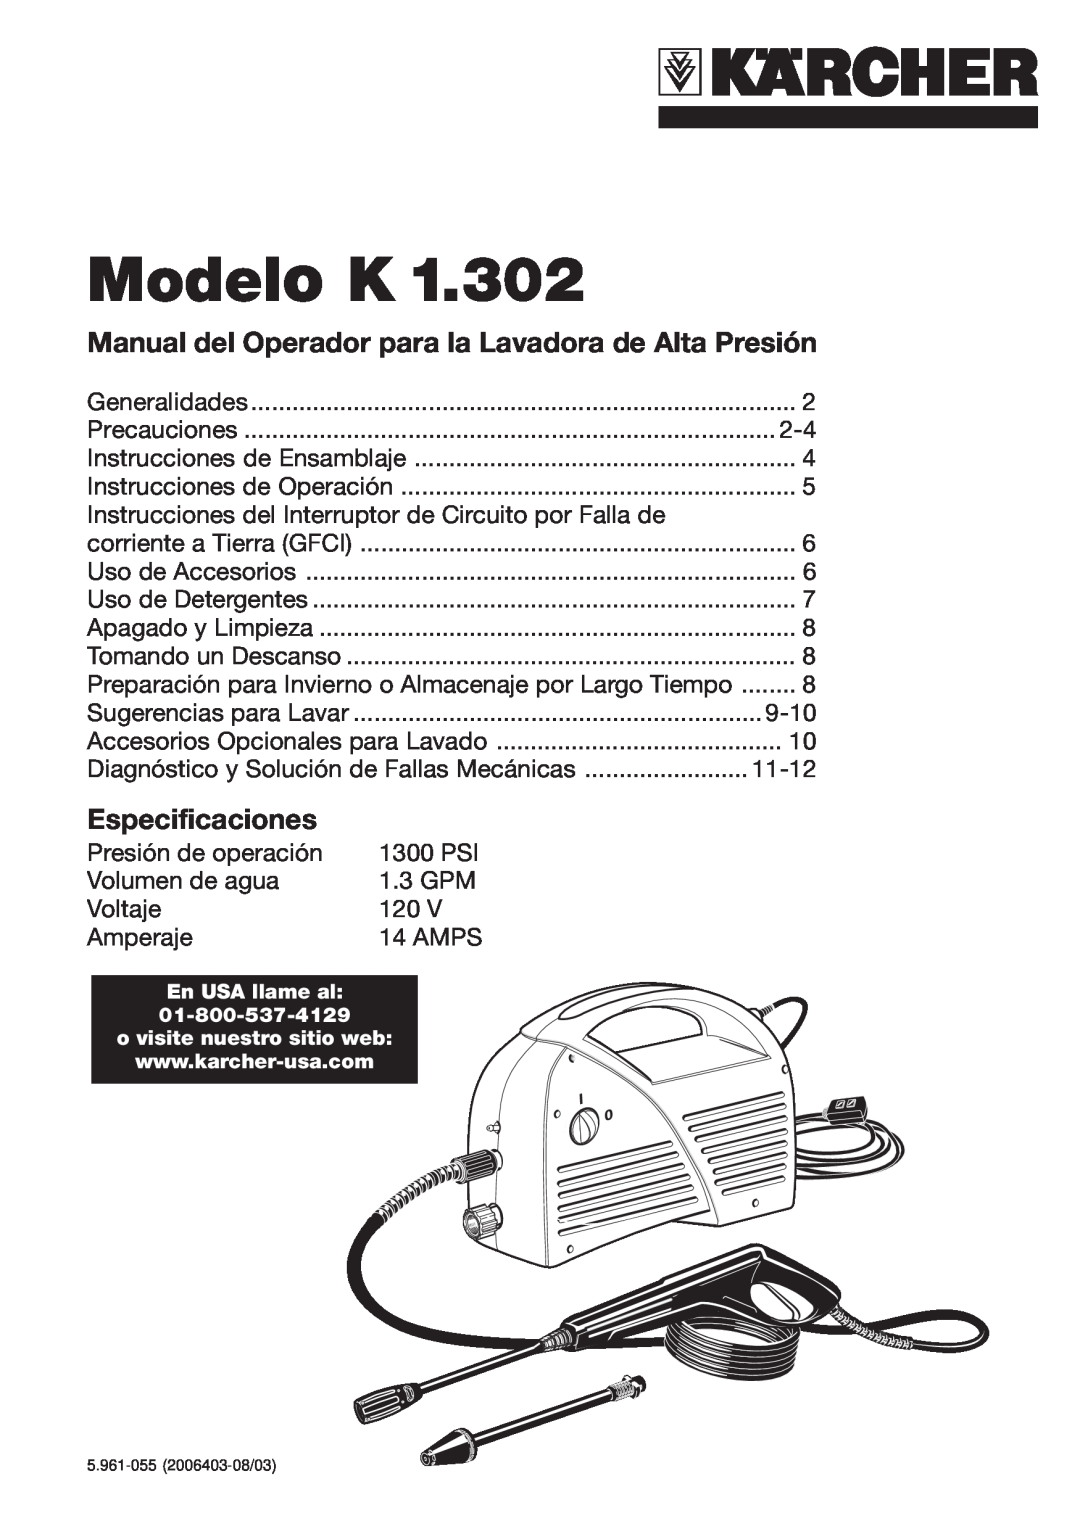 Karcher K 1.302 specifications Modelo K, Manual del Operador para la Lavadora de Alta Presión, Especificaciones 